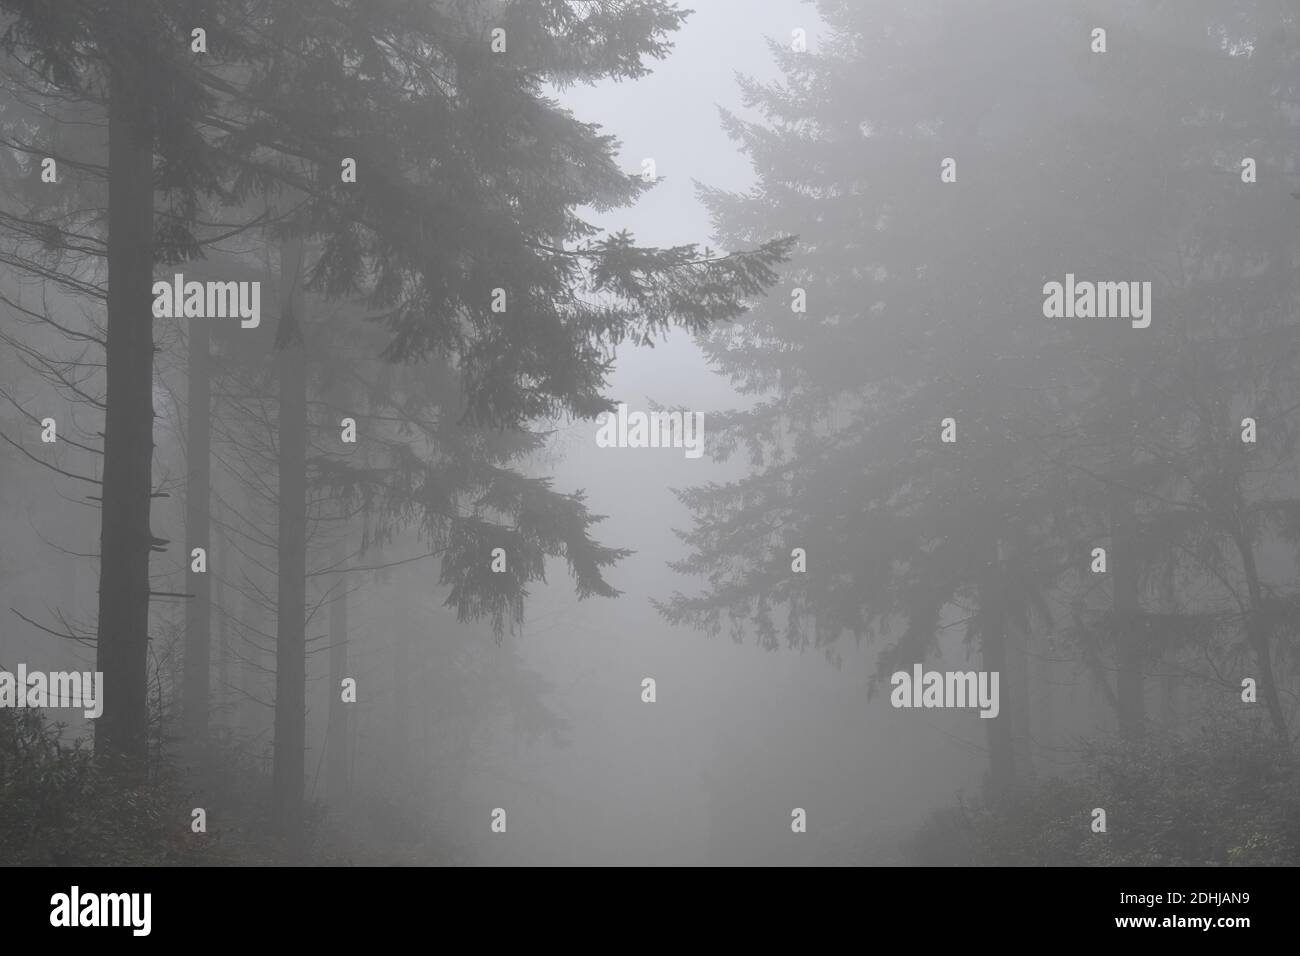 Stock Bilder von Nebel im Wald - North Downs in der Nähe von West Horsley, Surrey.- Dick Focks Common - Forestry Commission. Bild zeigt Nebel, Bäume, Nebel über dieser malerischen Gegend von Surrey. Bild aufgenommen am 7. Dezember 2020 Stockfoto